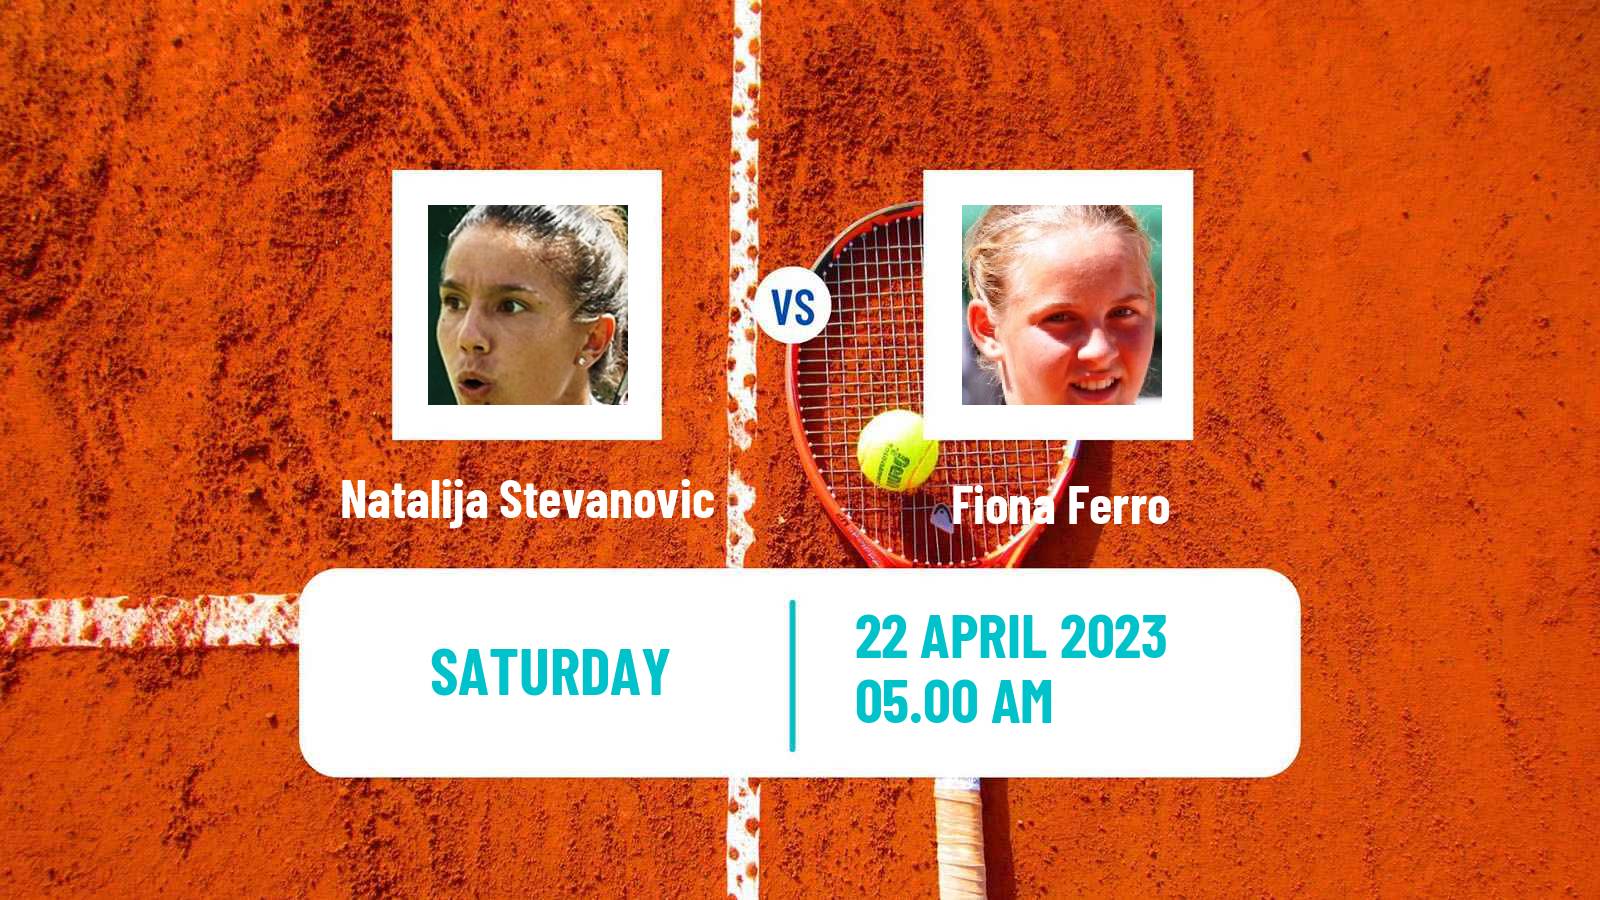 Tennis ITF Tournaments Natalija Stevanovic - Fiona Ferro